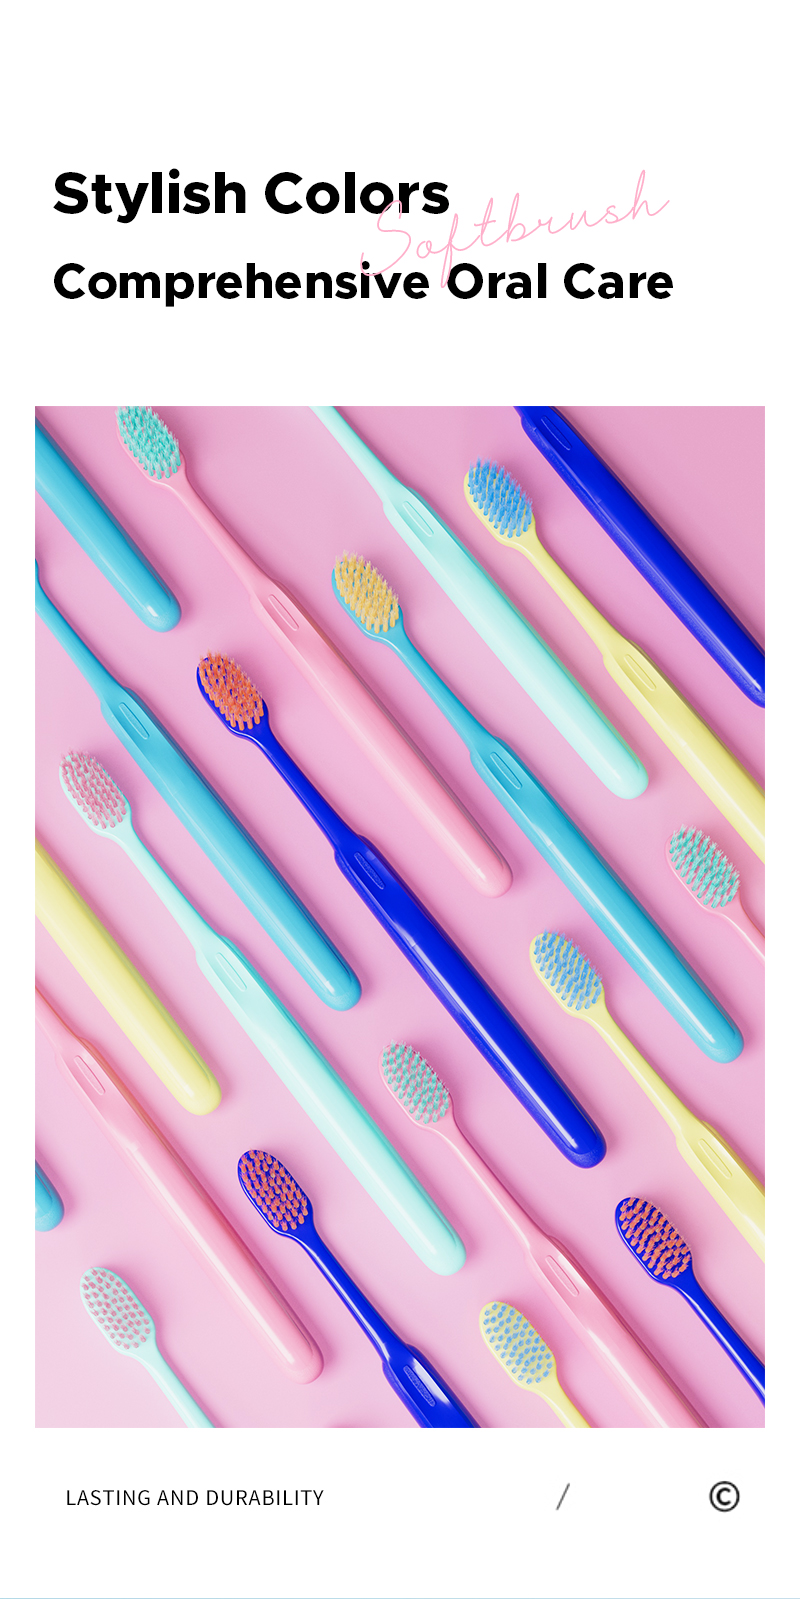 Premium Soft Bristle Toothbrush